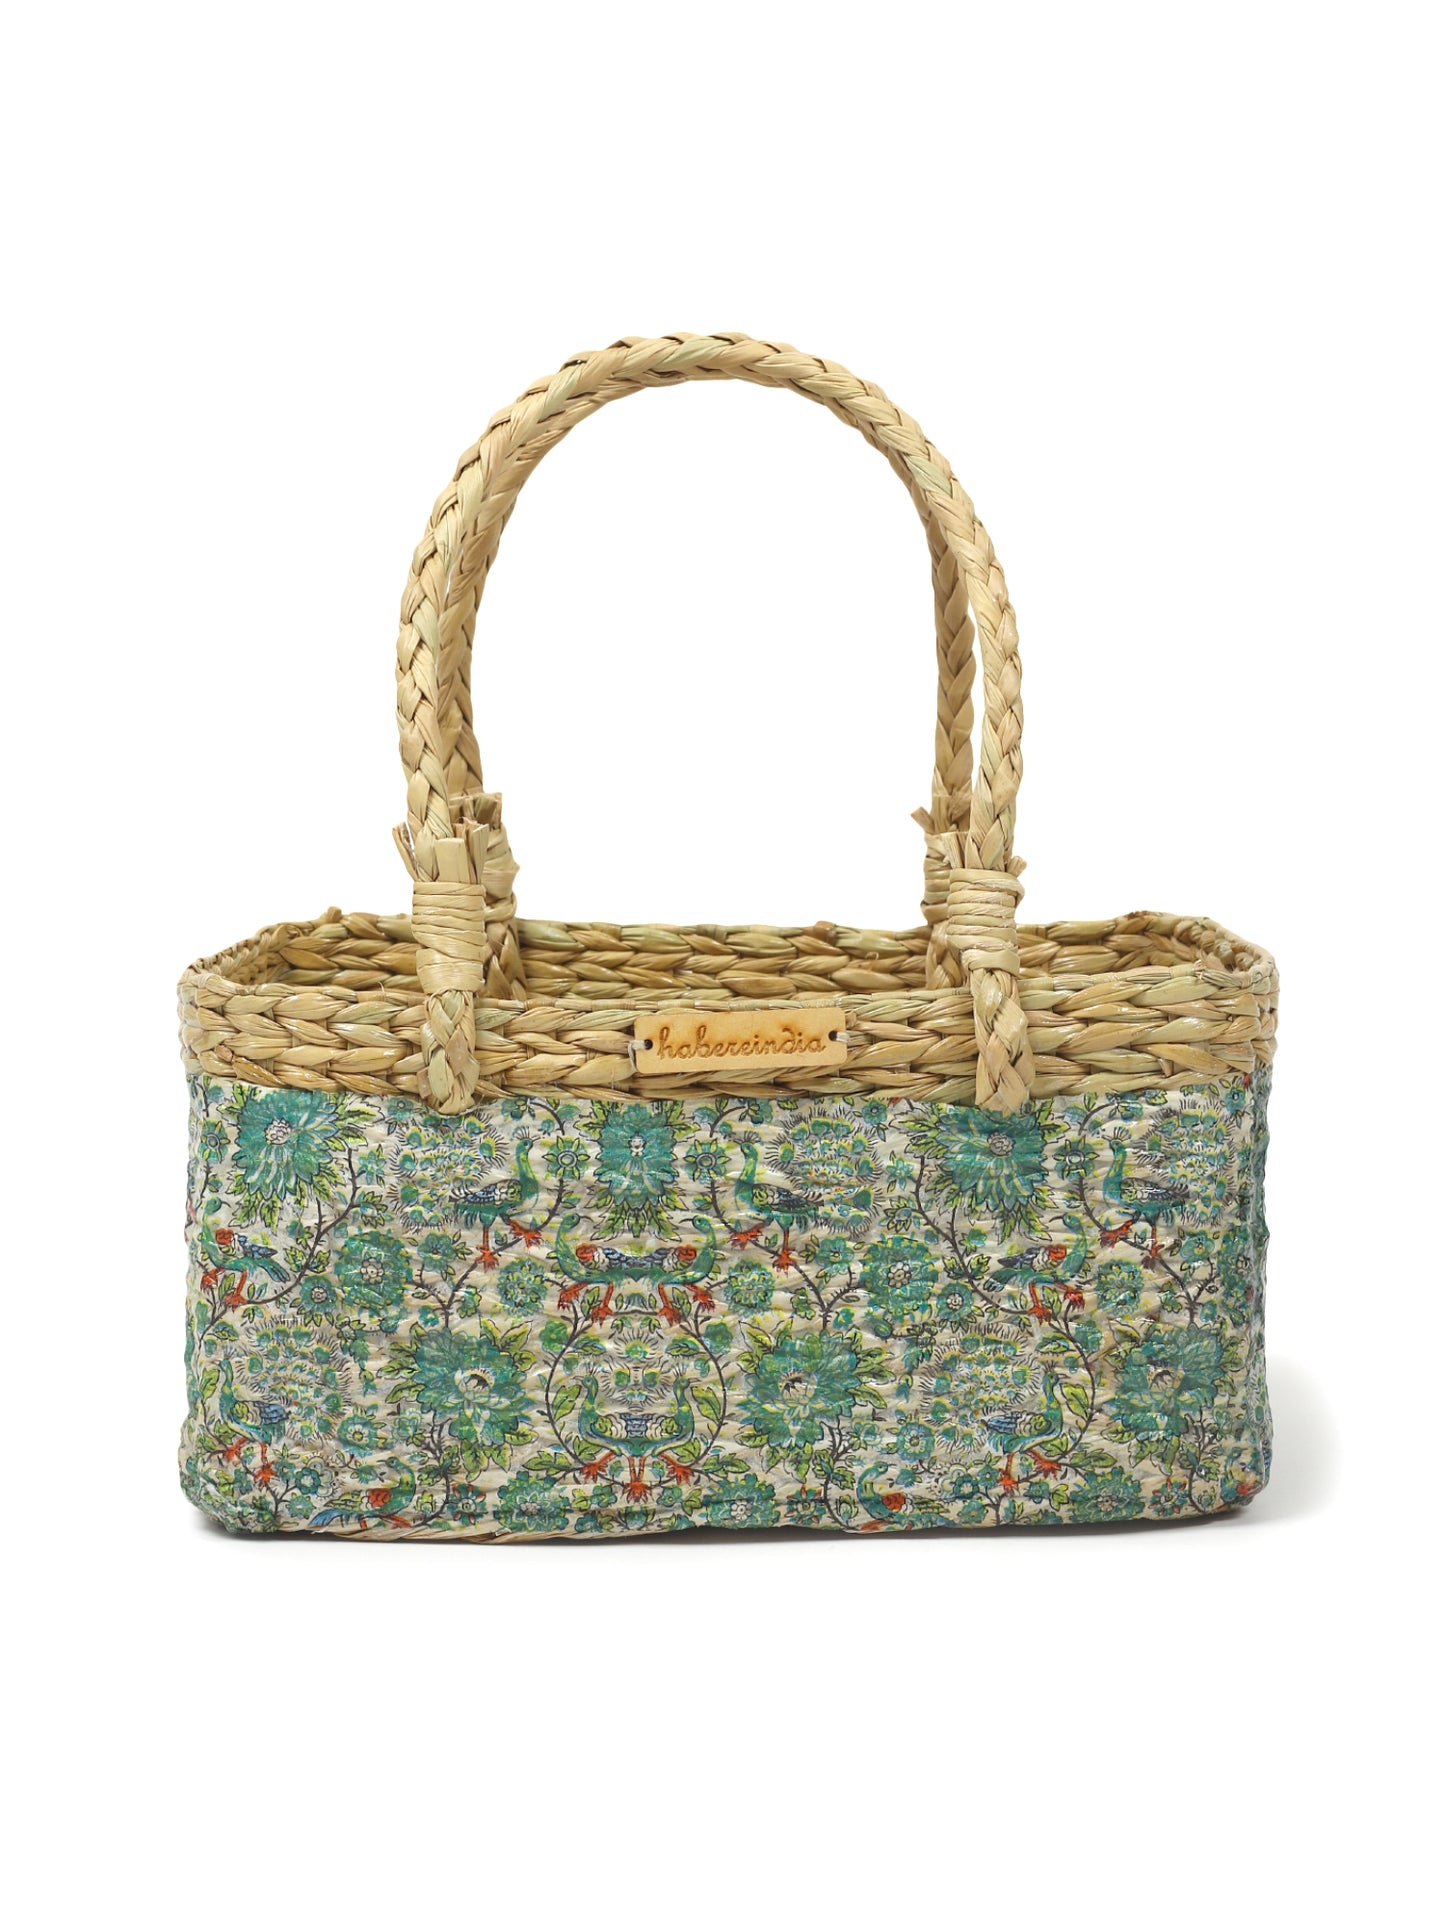 Seagrass Hamper Basket | Fruit Basket